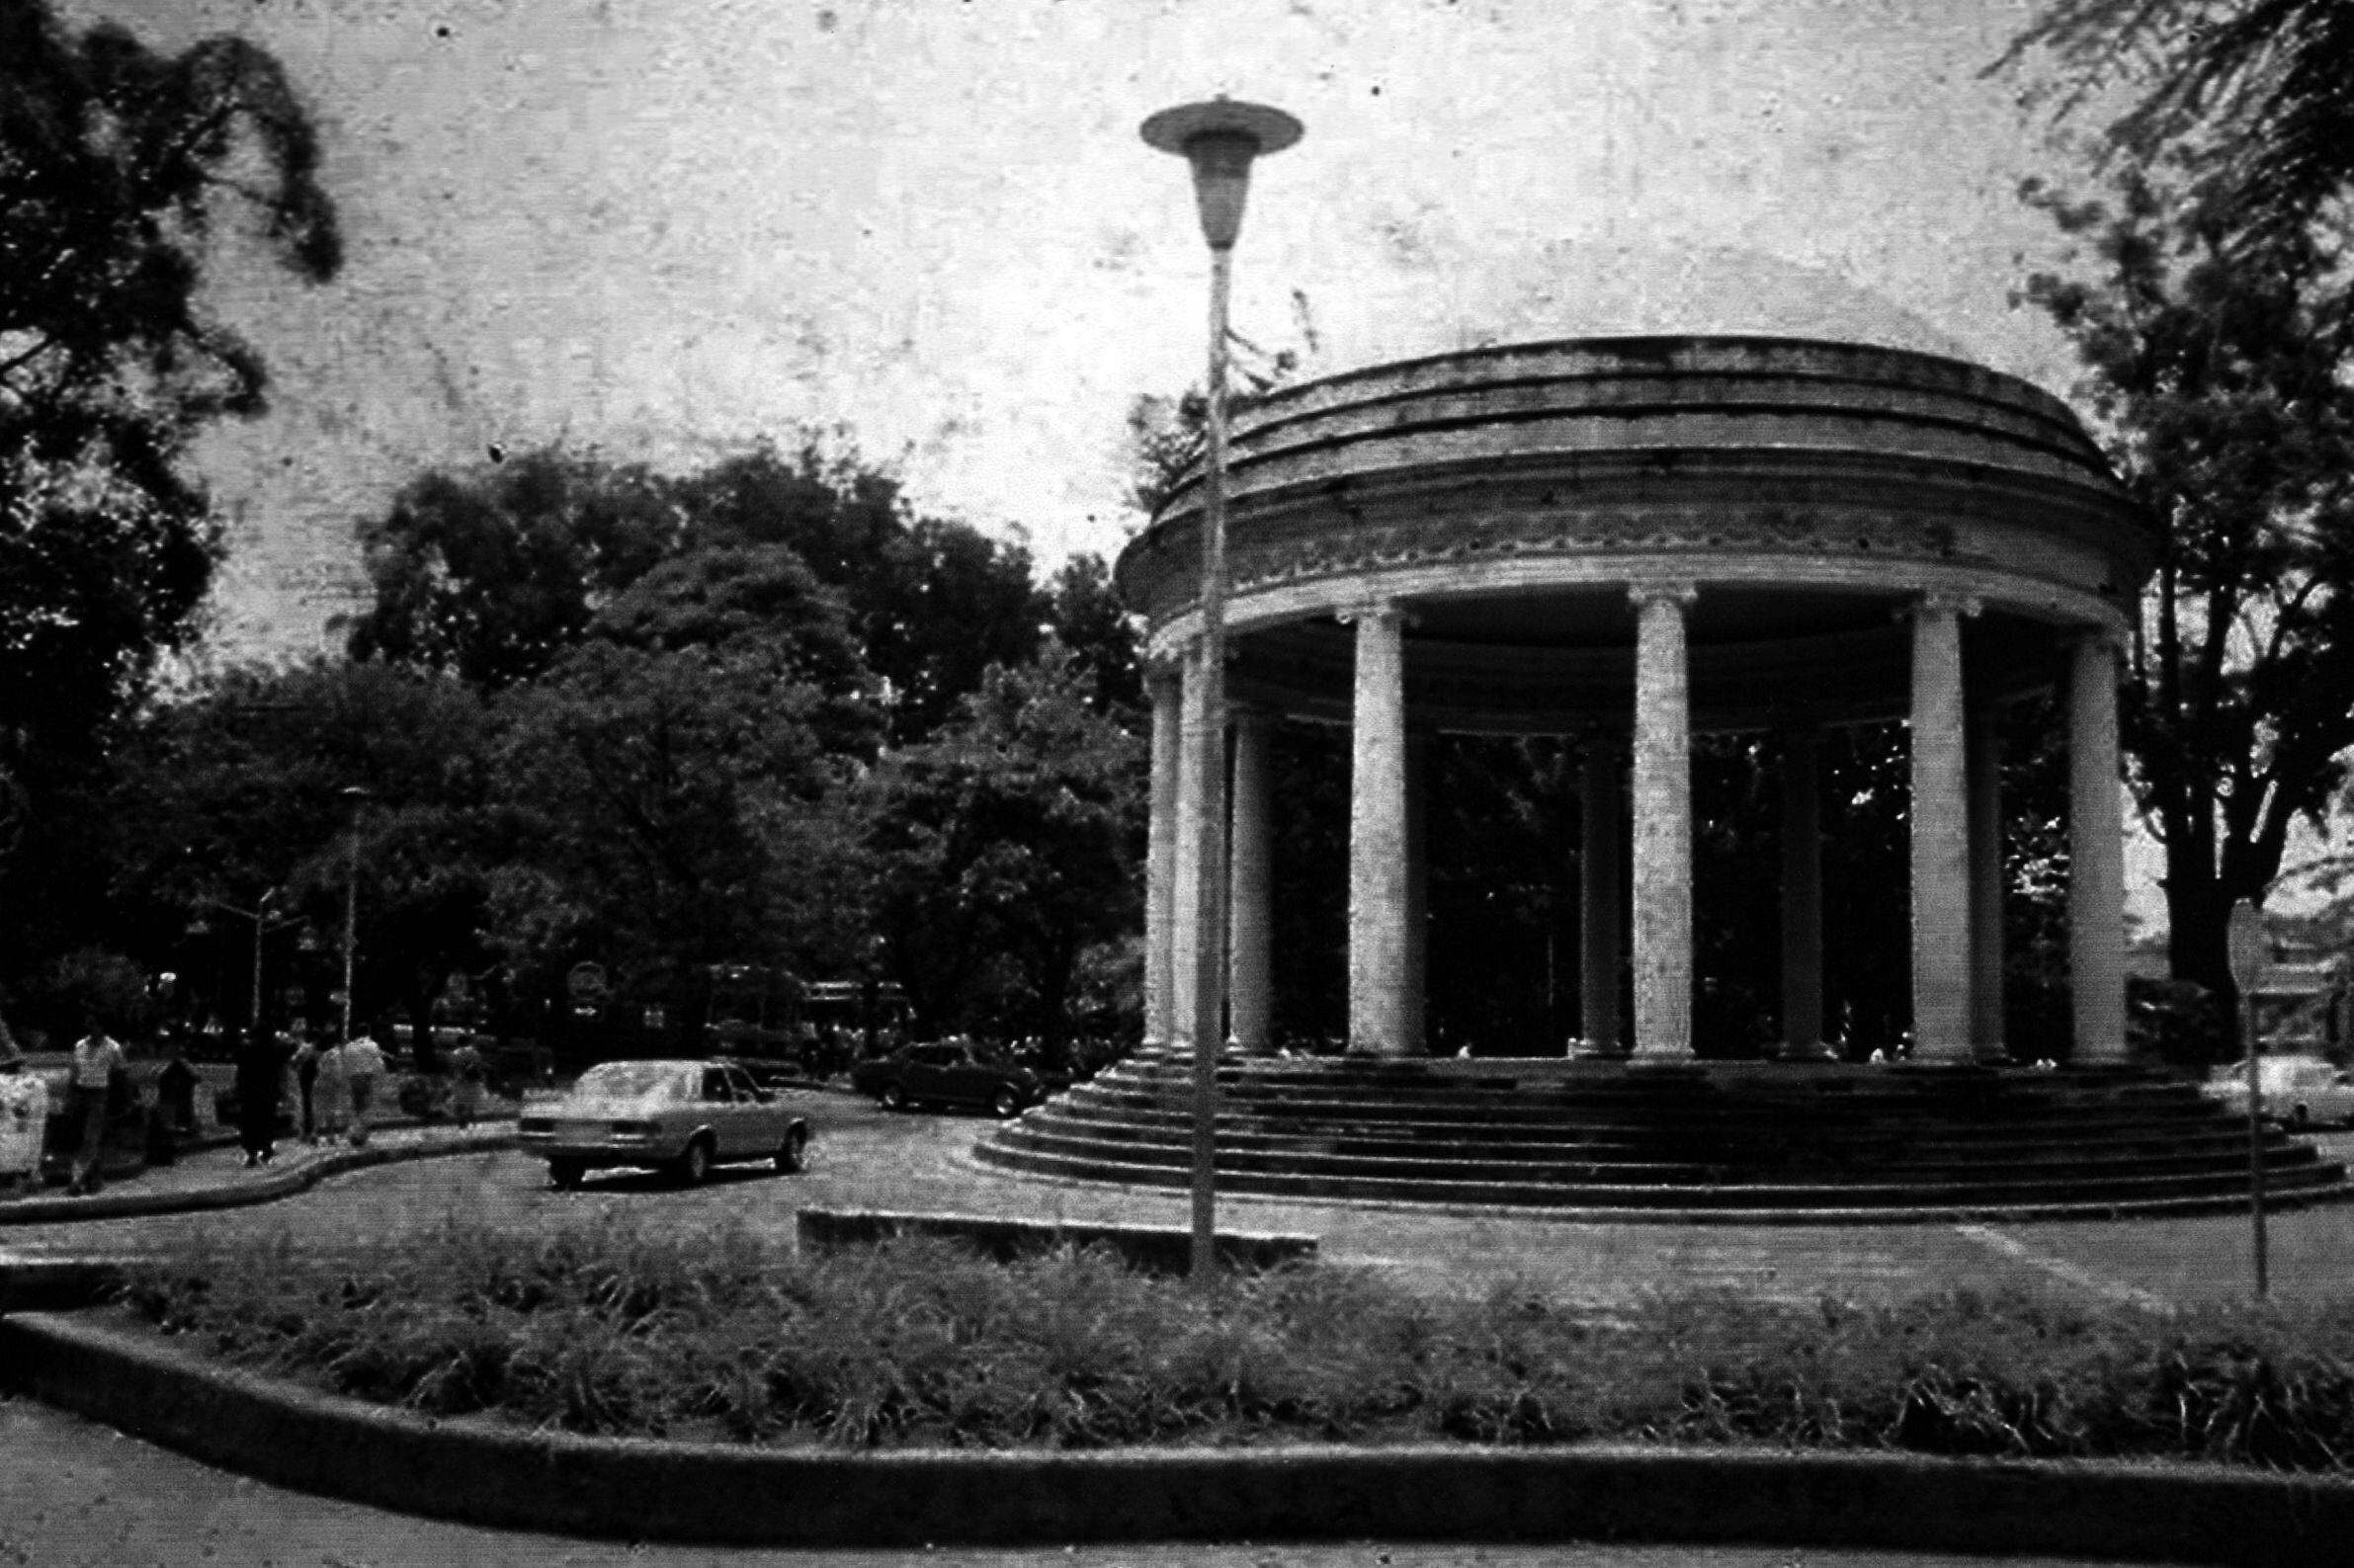 El Templo de la Música como una rotonda en medio del fragmentado Parque Morazán, hacia 1980. Fotografía de autor no determinado. 